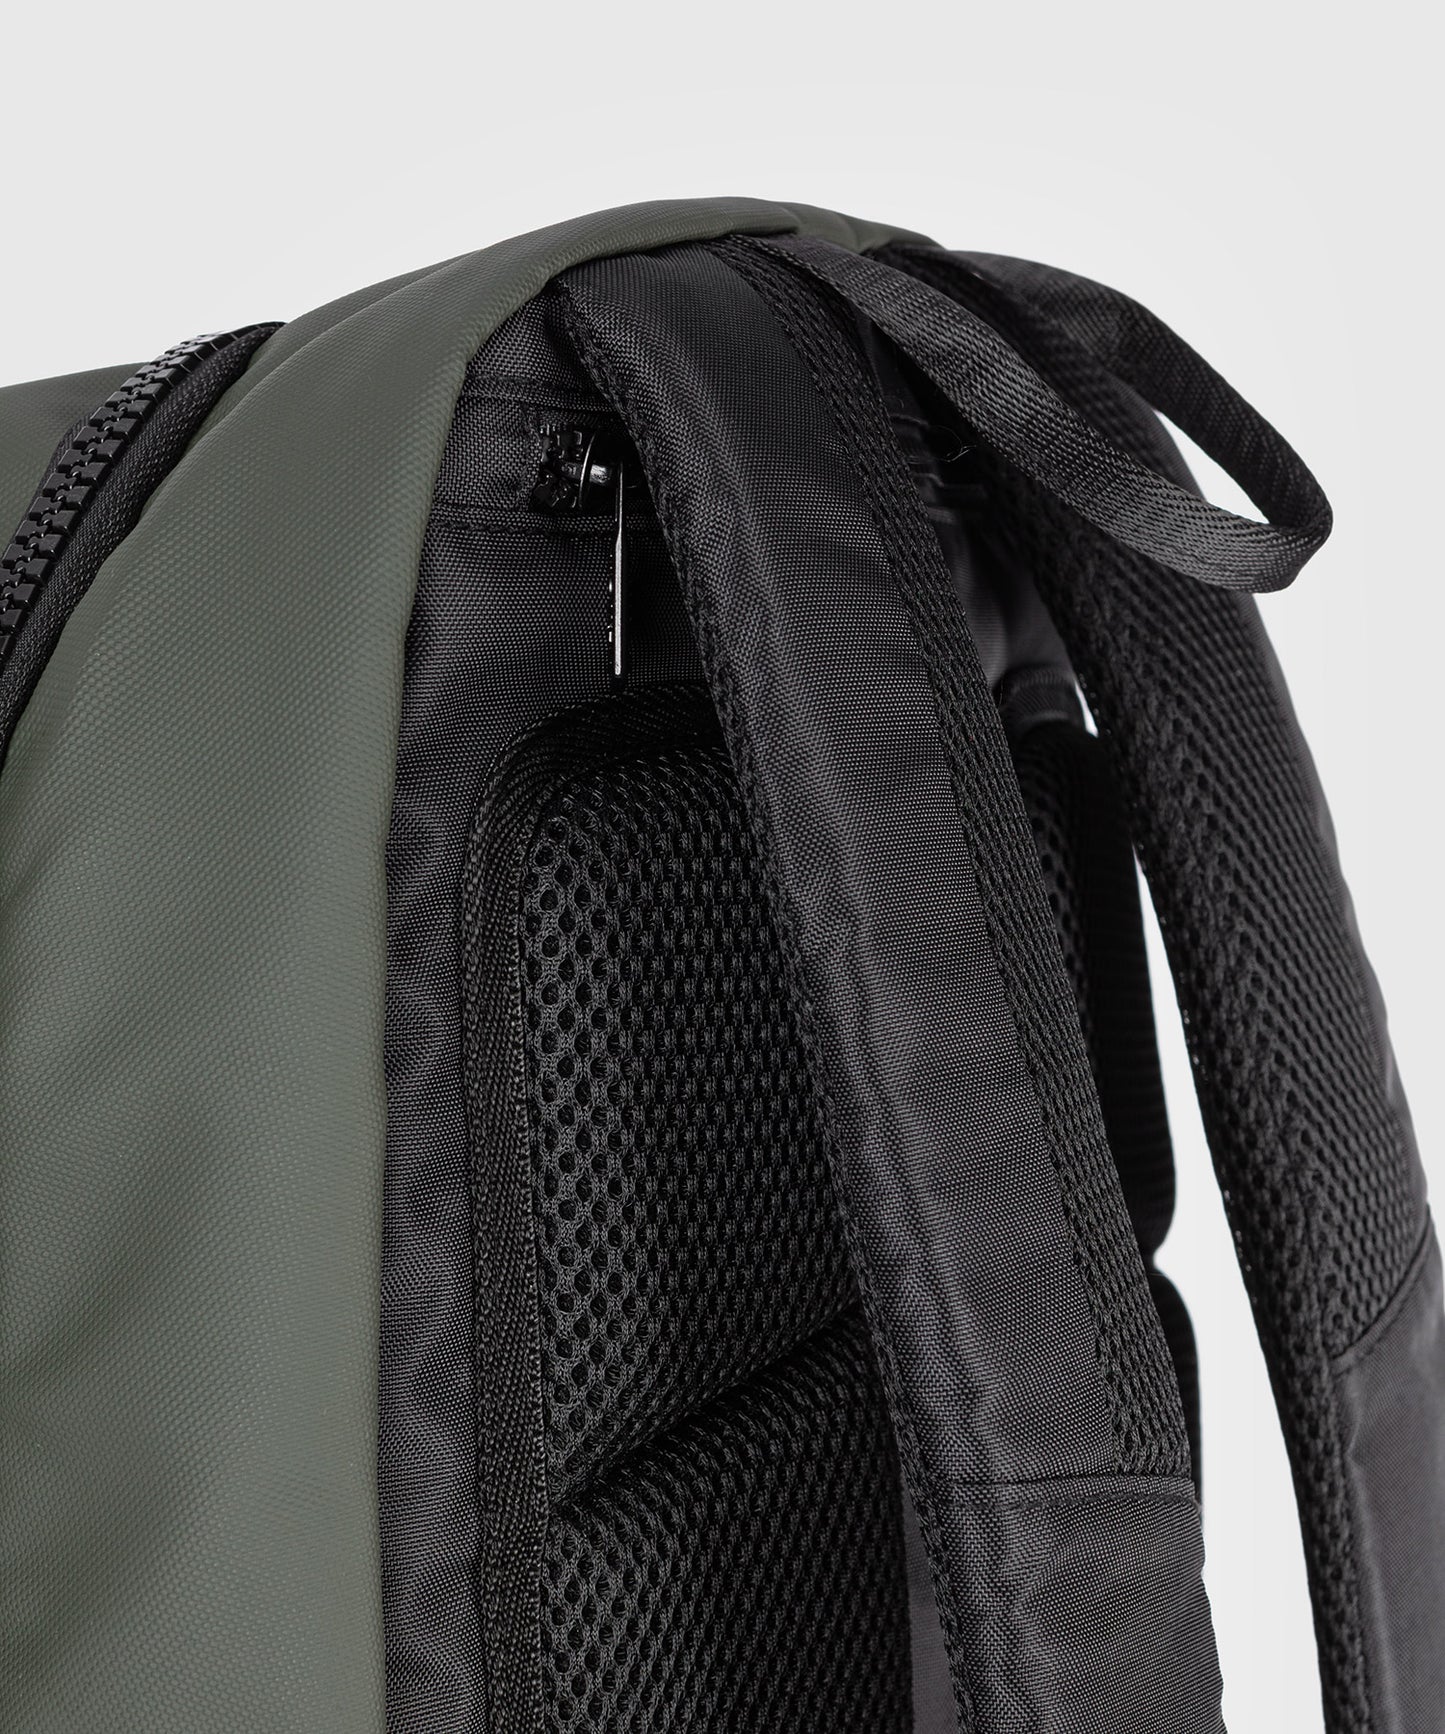 Venum Evo 2 Backpack - Black/Khaki